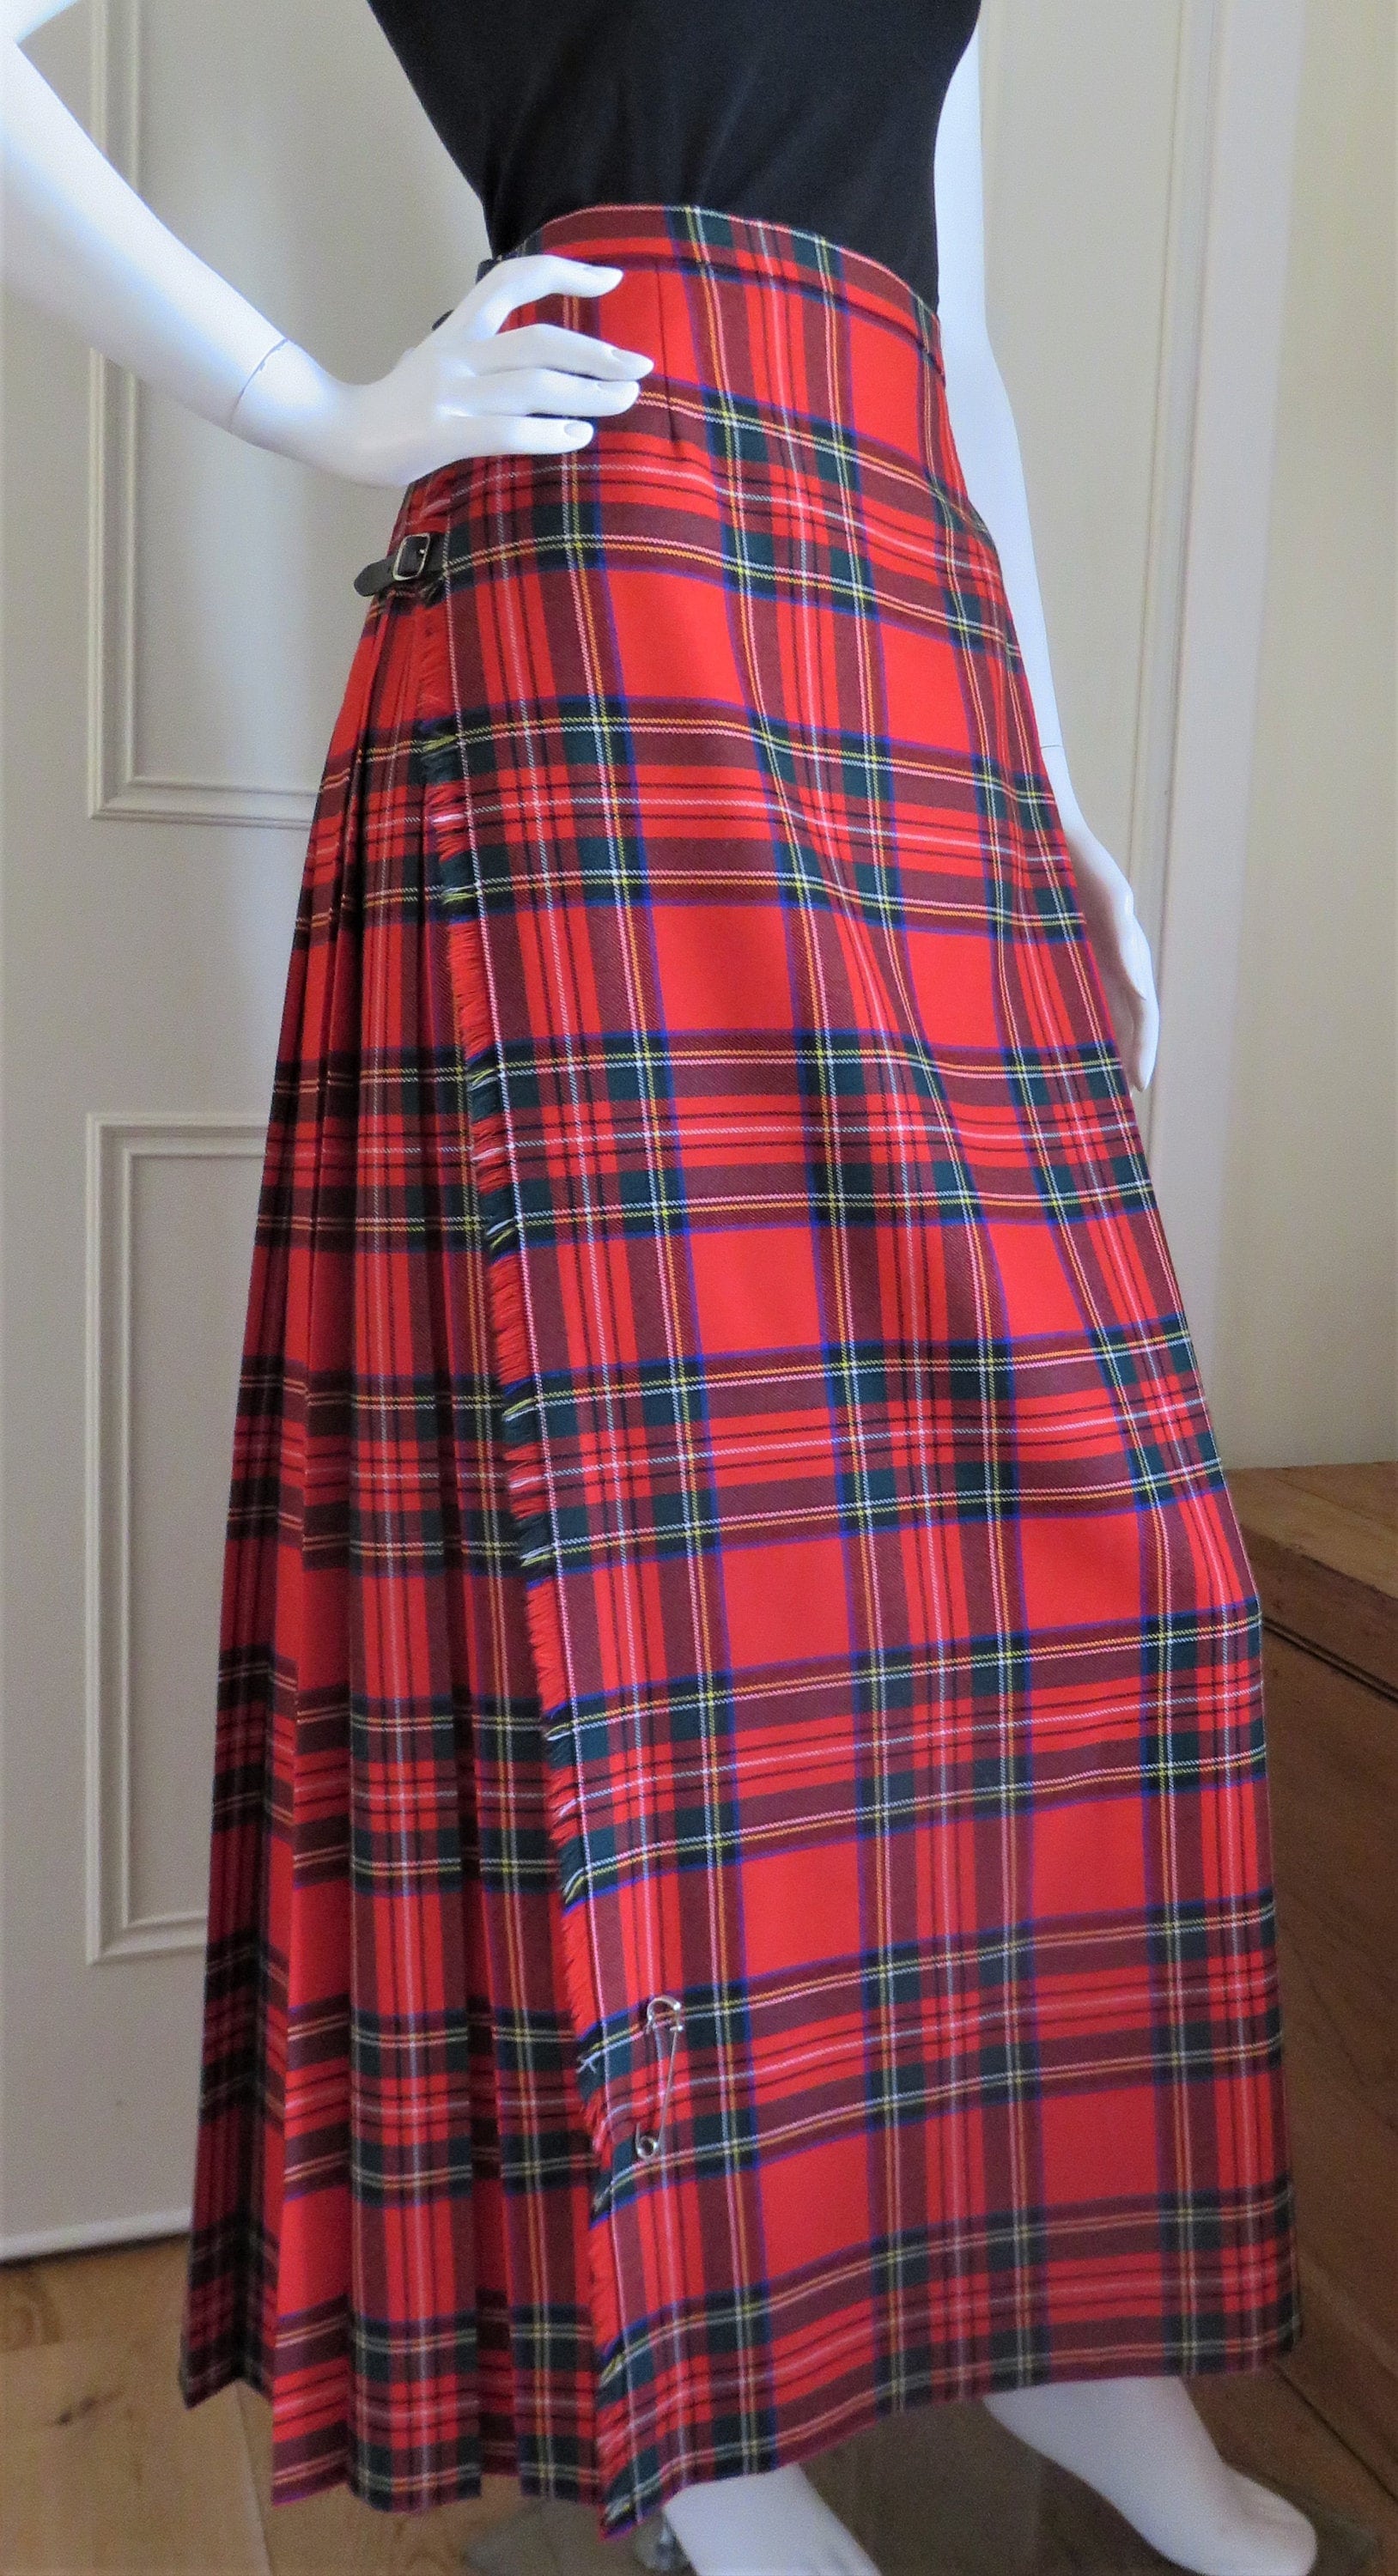 Tartan Evening Kilt Skirt Full Length Made in Scotland | Etsy